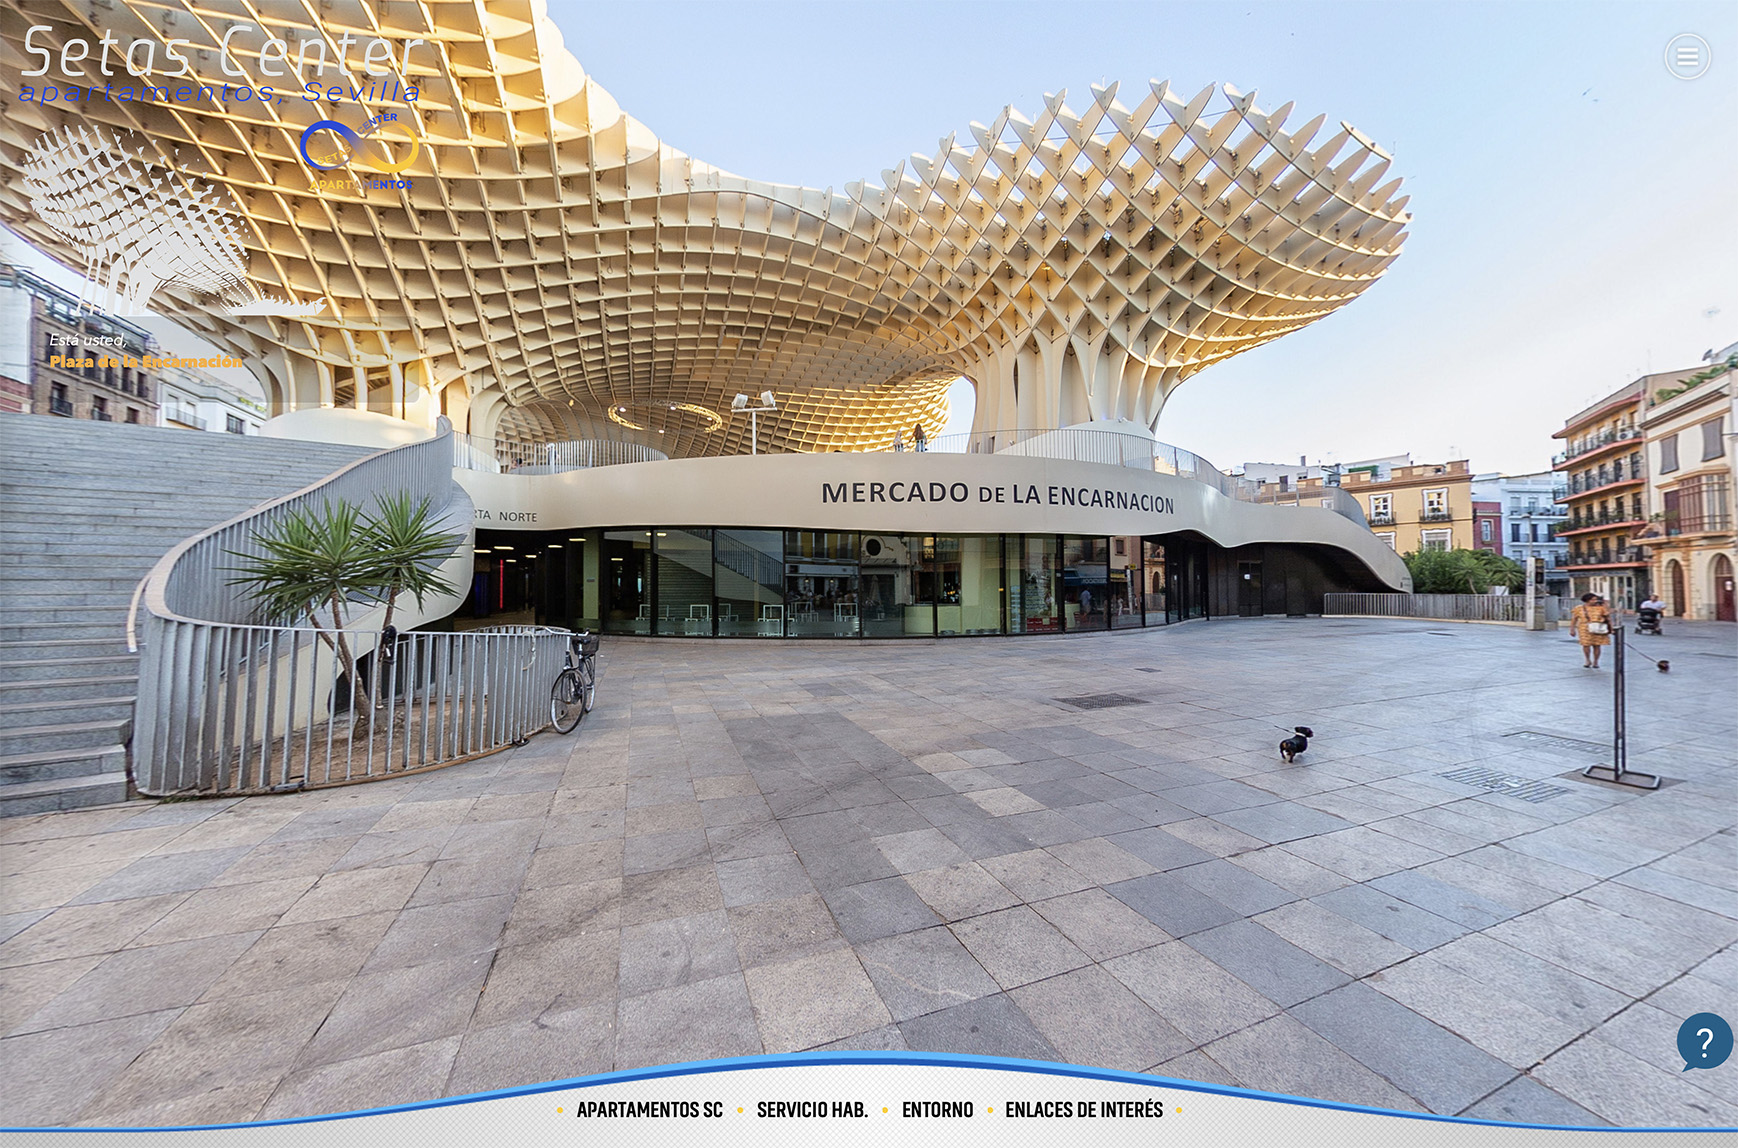 Setas Center, Sevilla